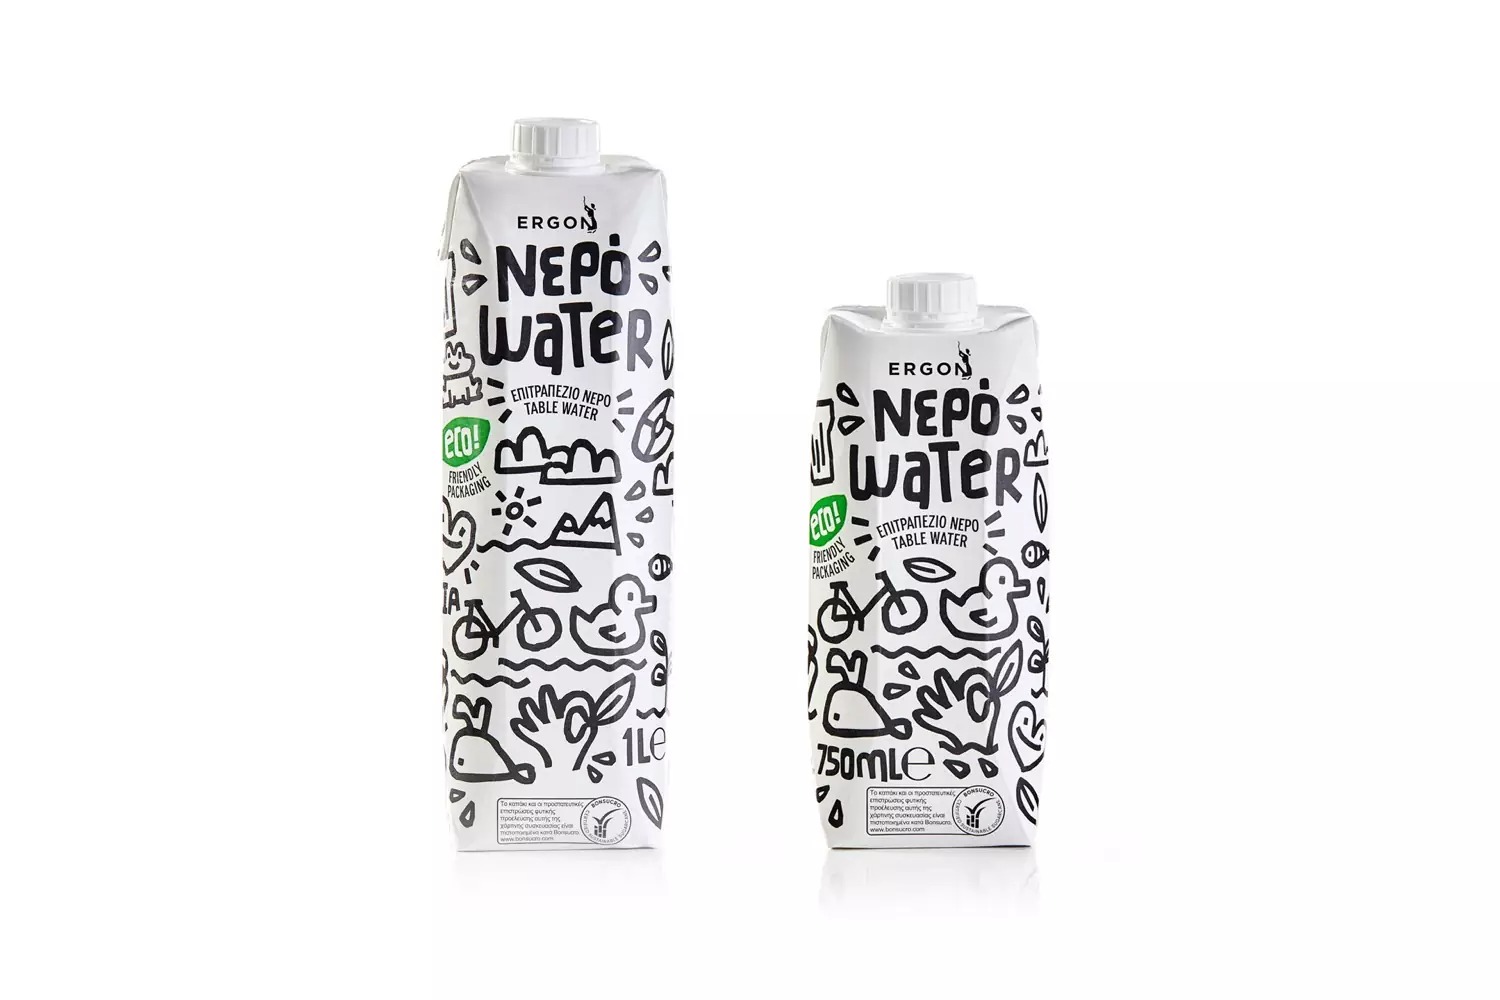 国外瓶装水包装设计作品,简洁大气的瓶装水宣传设计。